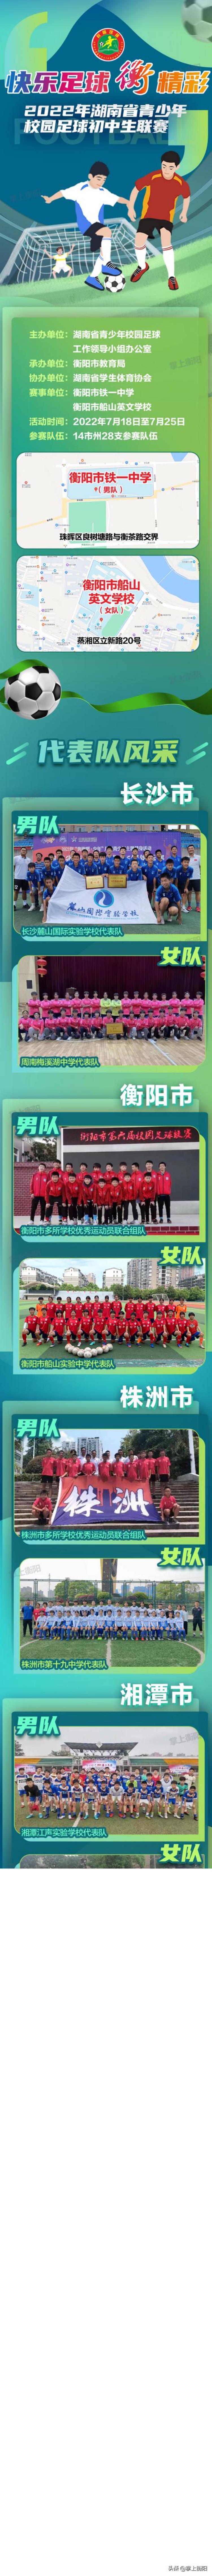 28支队伍参赛2022年湖南省青少年校园足球初中生联赛阵容曝光